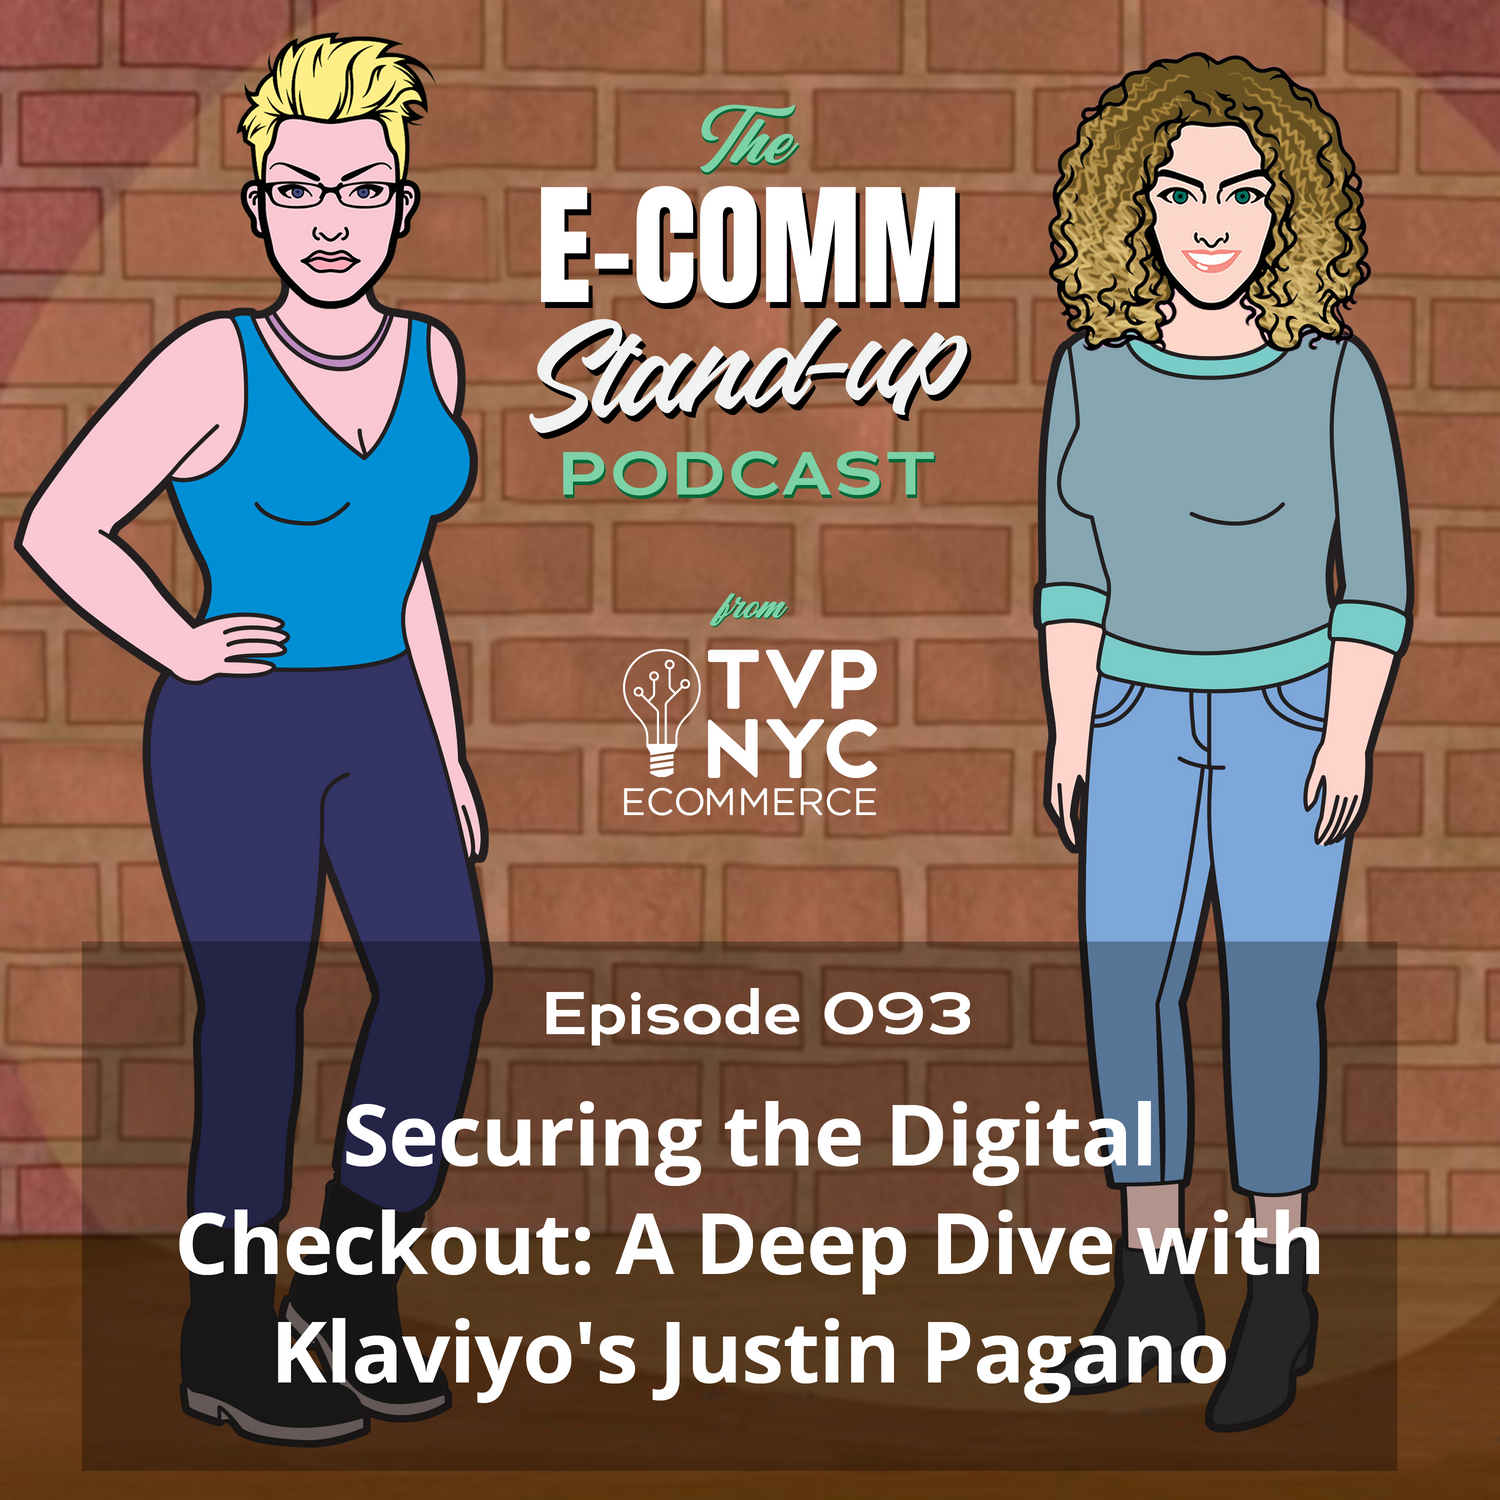 Securing the Digital Checkout: A Deep Dive with Klaviyo's Justin Pagano